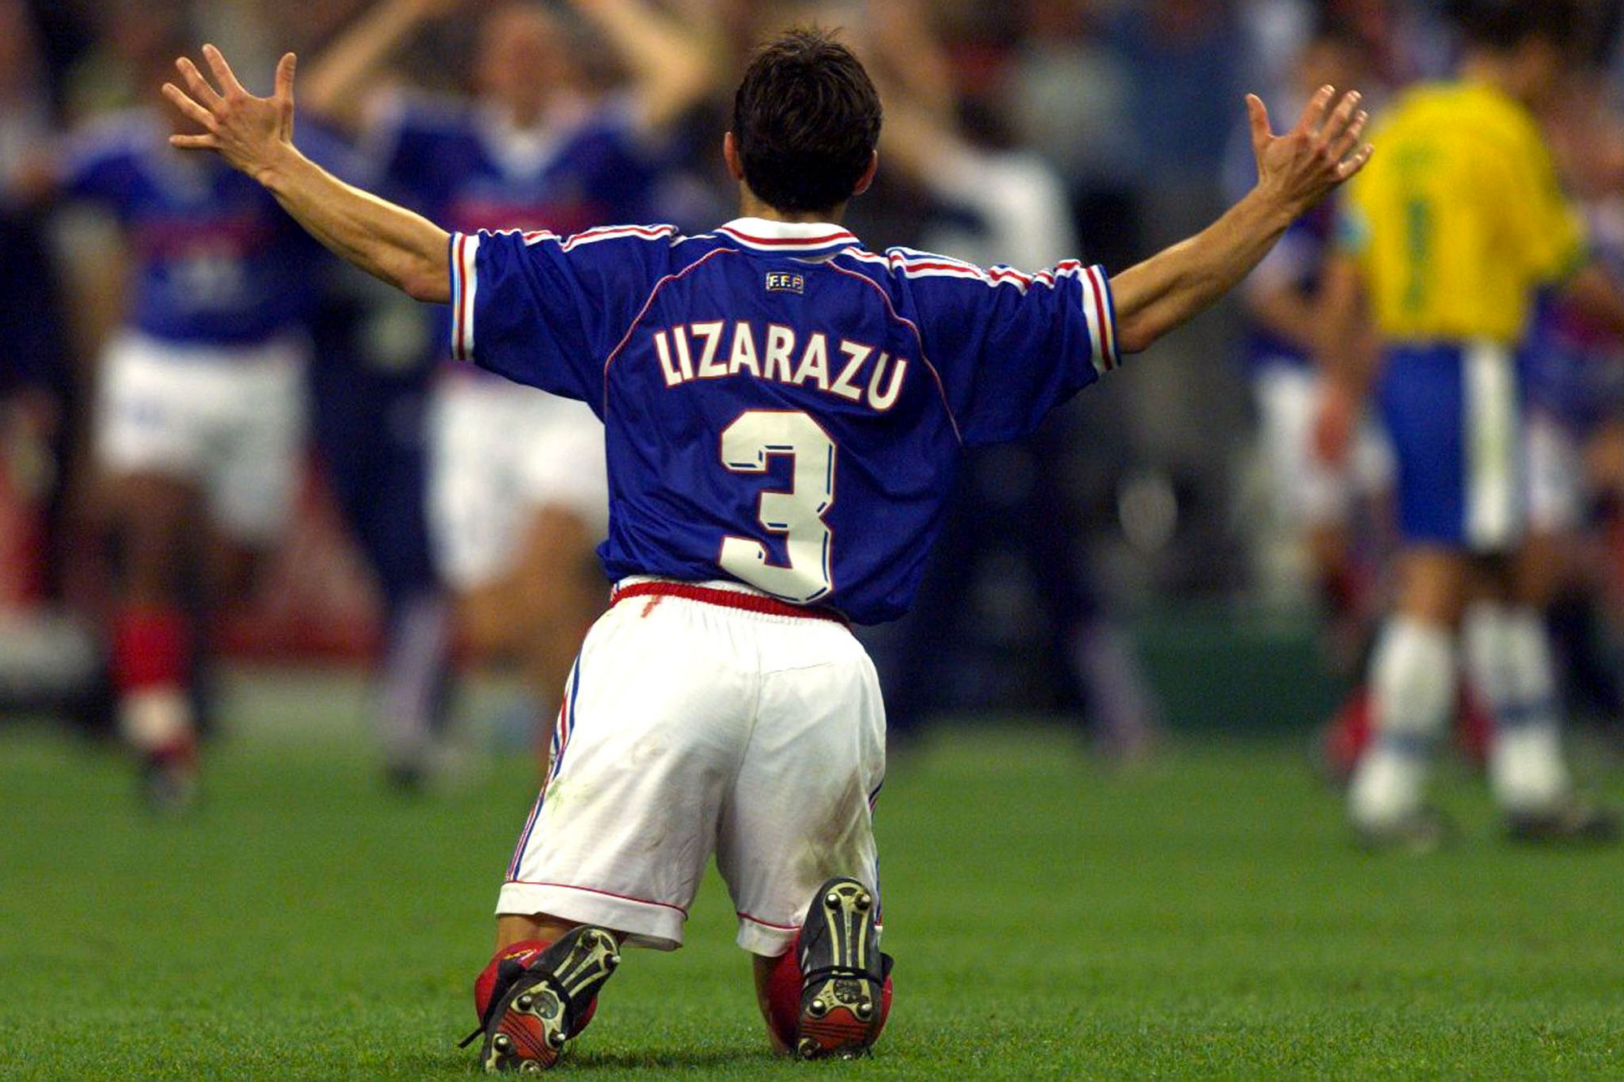 Bixente Lizarazu est réputé pour être l'un des plus talentueux footballeurs à son poste.